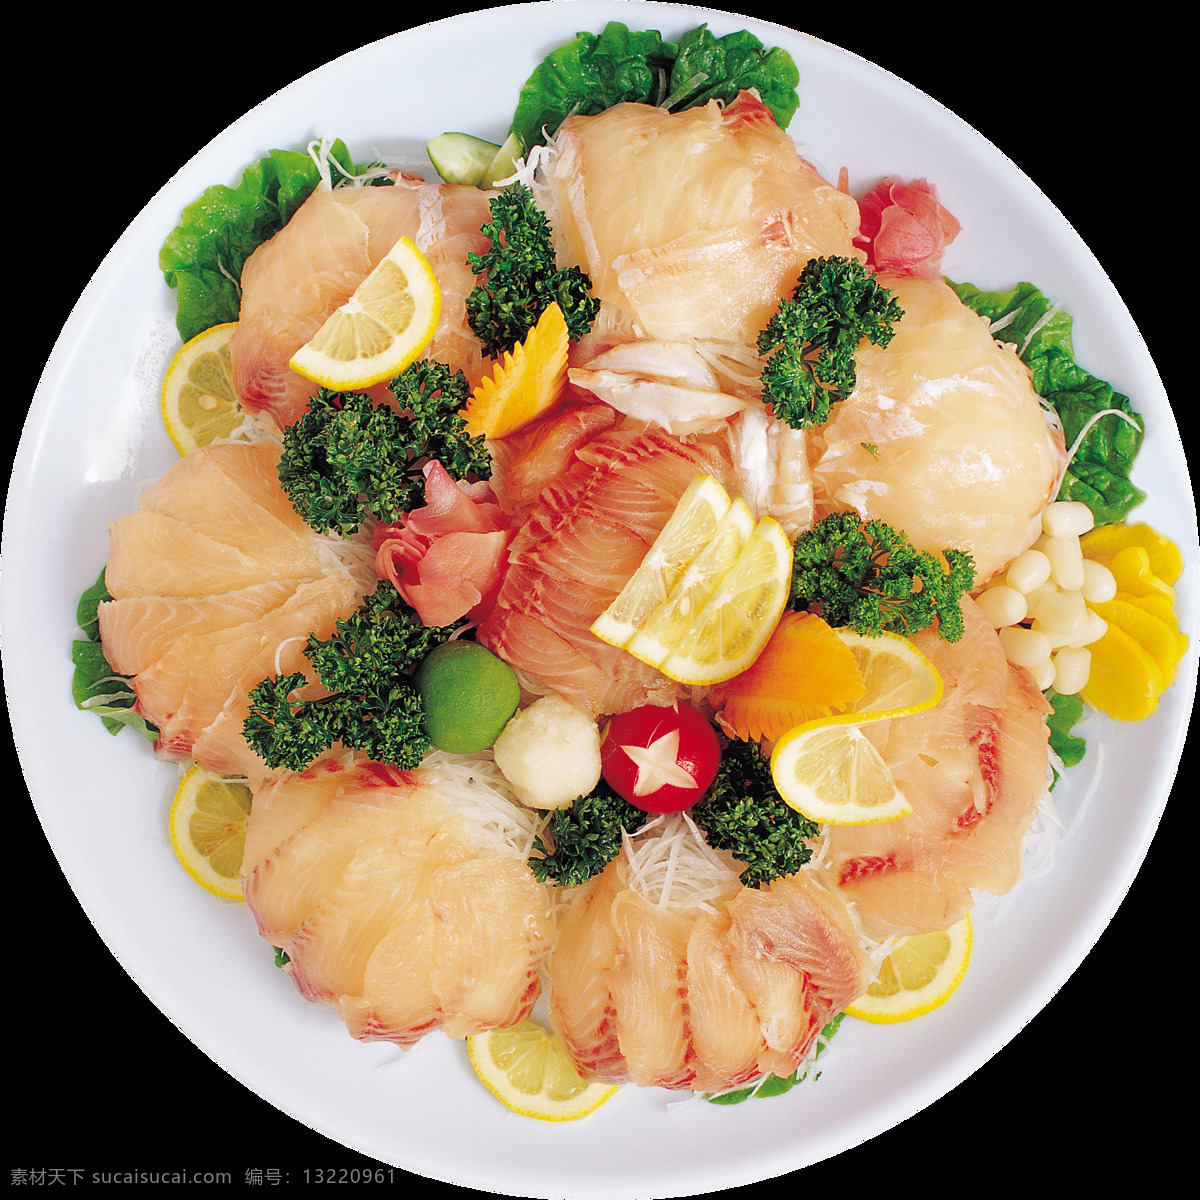 精致 鱼类 日式 料理 美食 产品 实物 白色盘子 料理美食 日本美食 日本文化 日式美食 鱼类料理